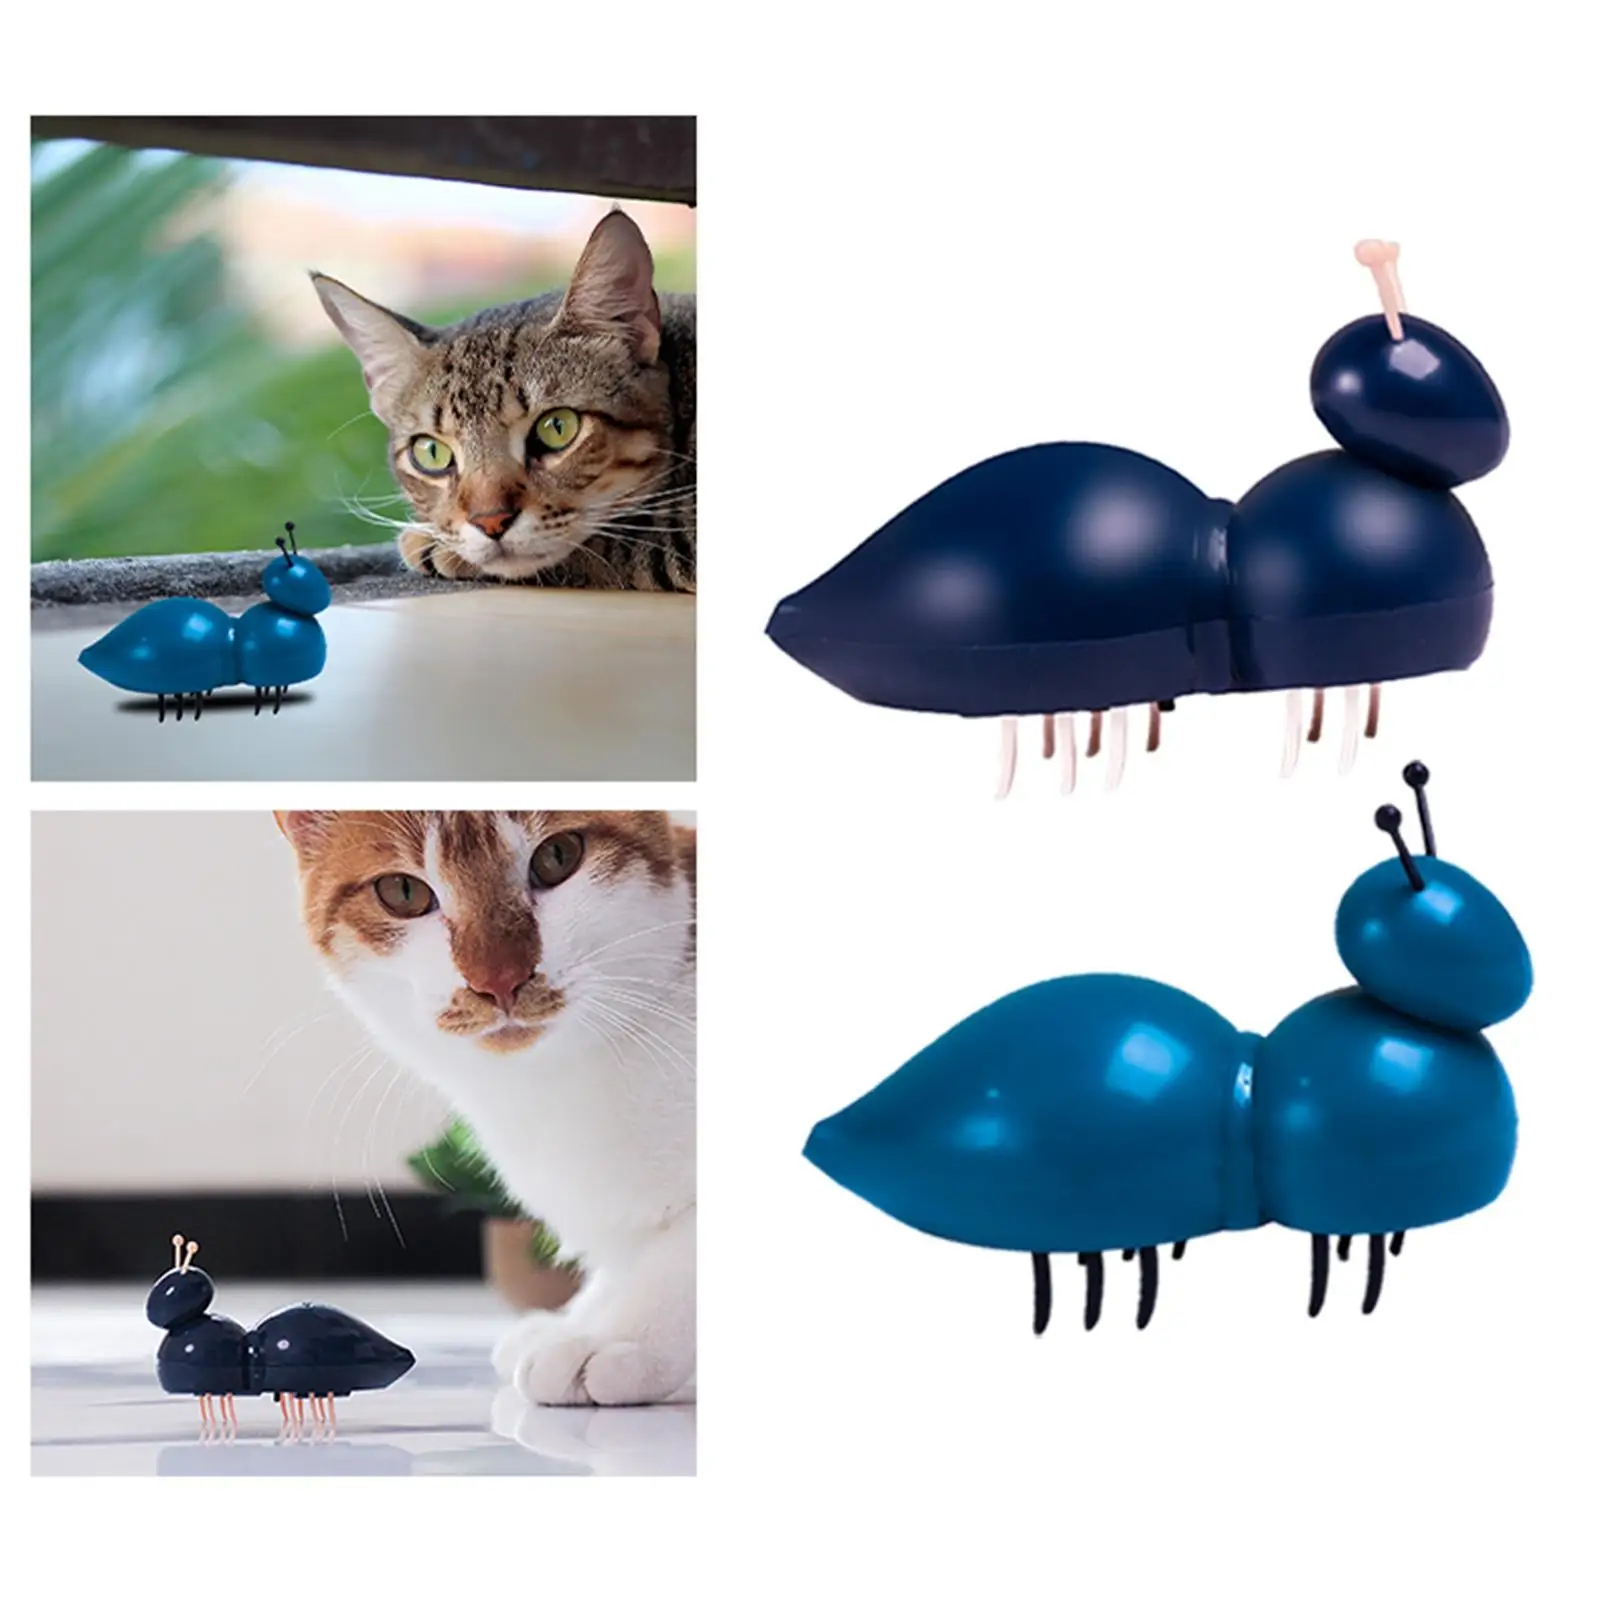 Komik İnteraktif Kedi Oyuncaklar Titreşim Hareket Emekleme Karınca Simülasyon Otomatik Malzemeleri Mini Oyuncaklar Egzersiz için Kapalı Eğitim